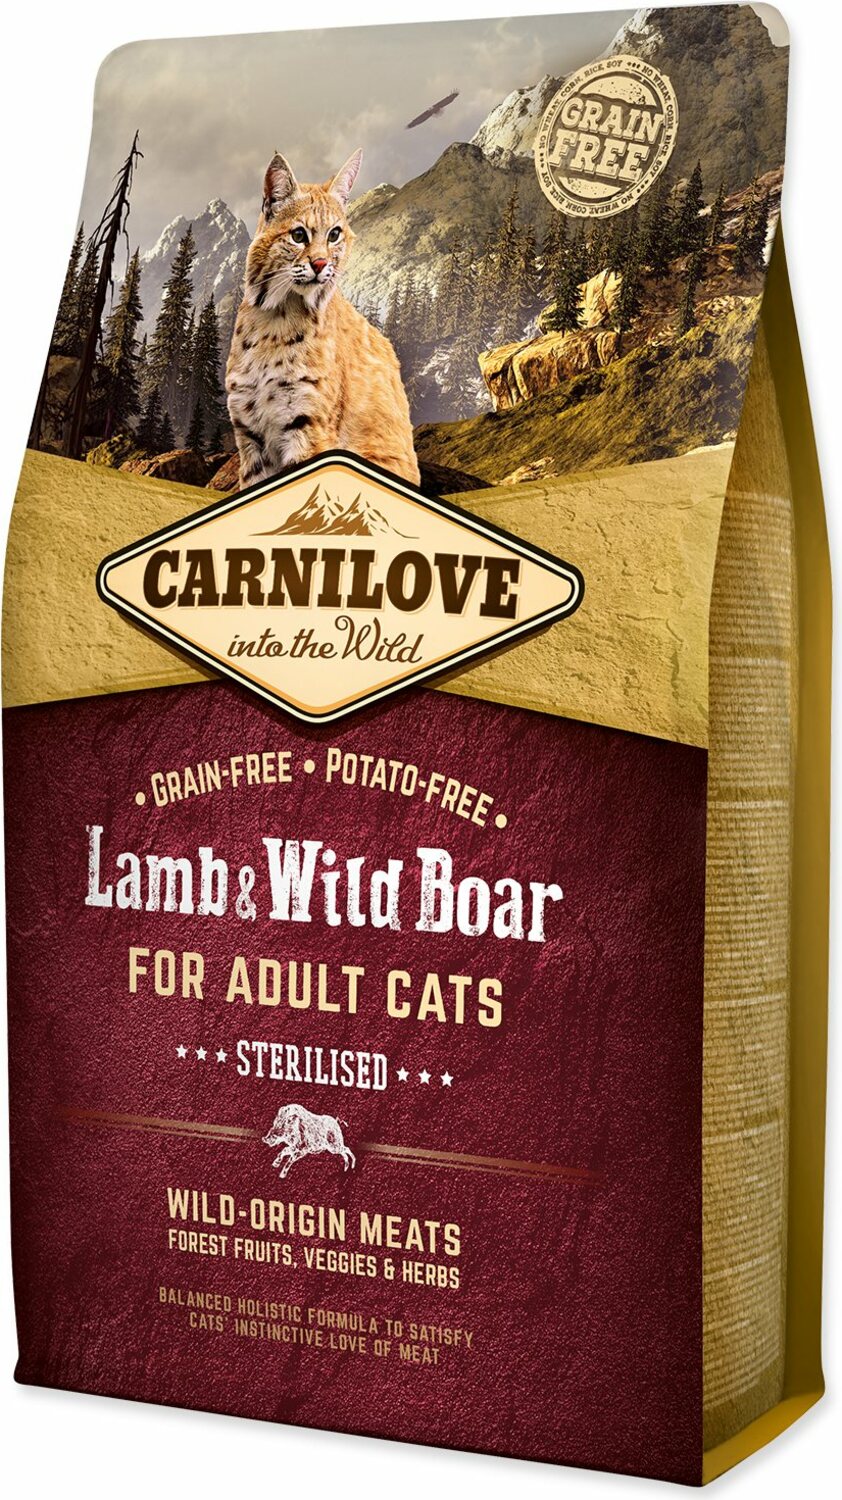 Krmivo Carnilove Sterilisod Adult Cats Lamb & Wild Boar 2kg